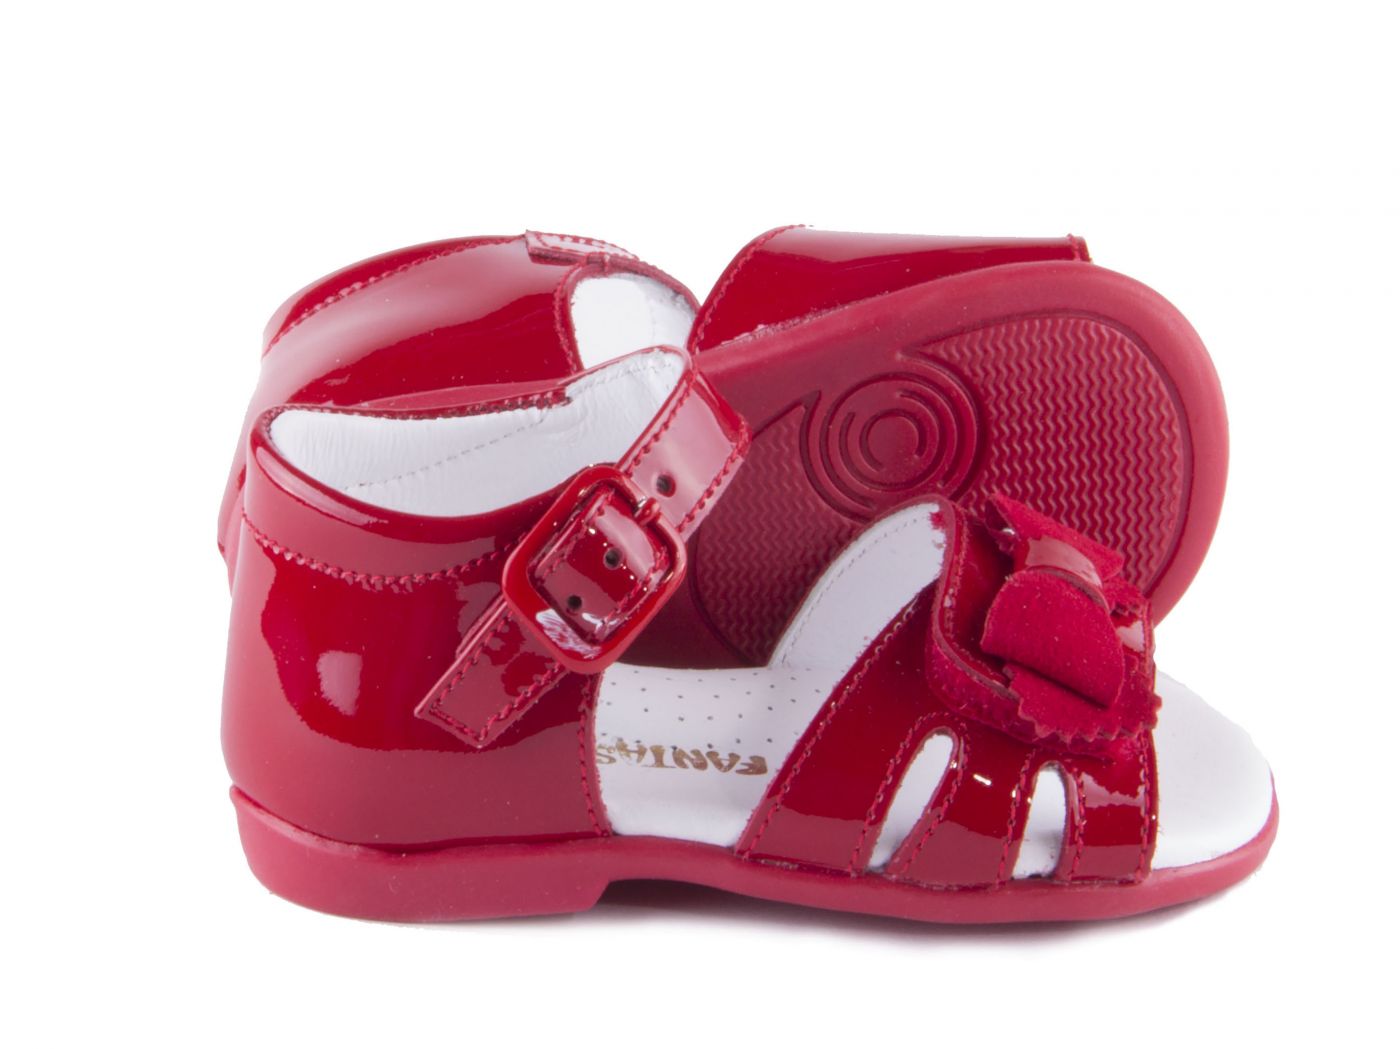 Comprar zapato KIDS para PREANDANTE NIÑA estilo SANDALIA color ROJO CHAROL